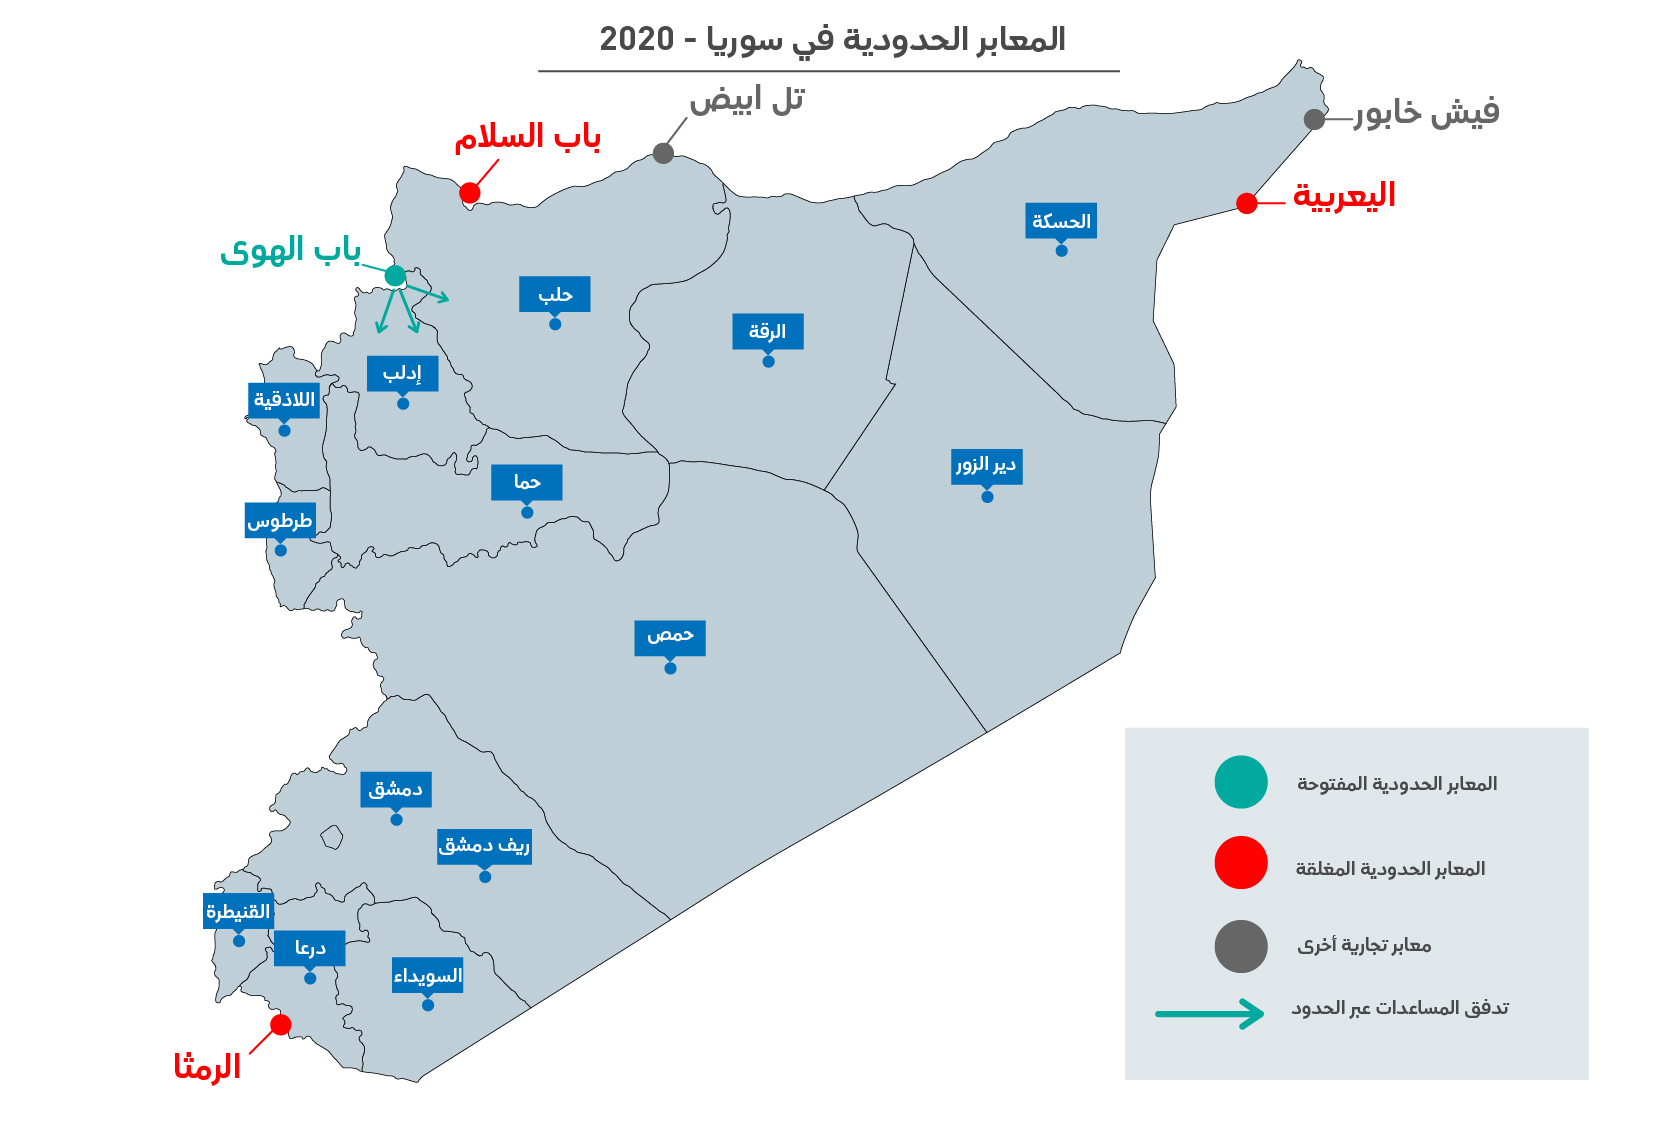 قرار مجلس الأمن الذي يقضي بعبور المساعدات عبر الحدود إلى سوريا 2020